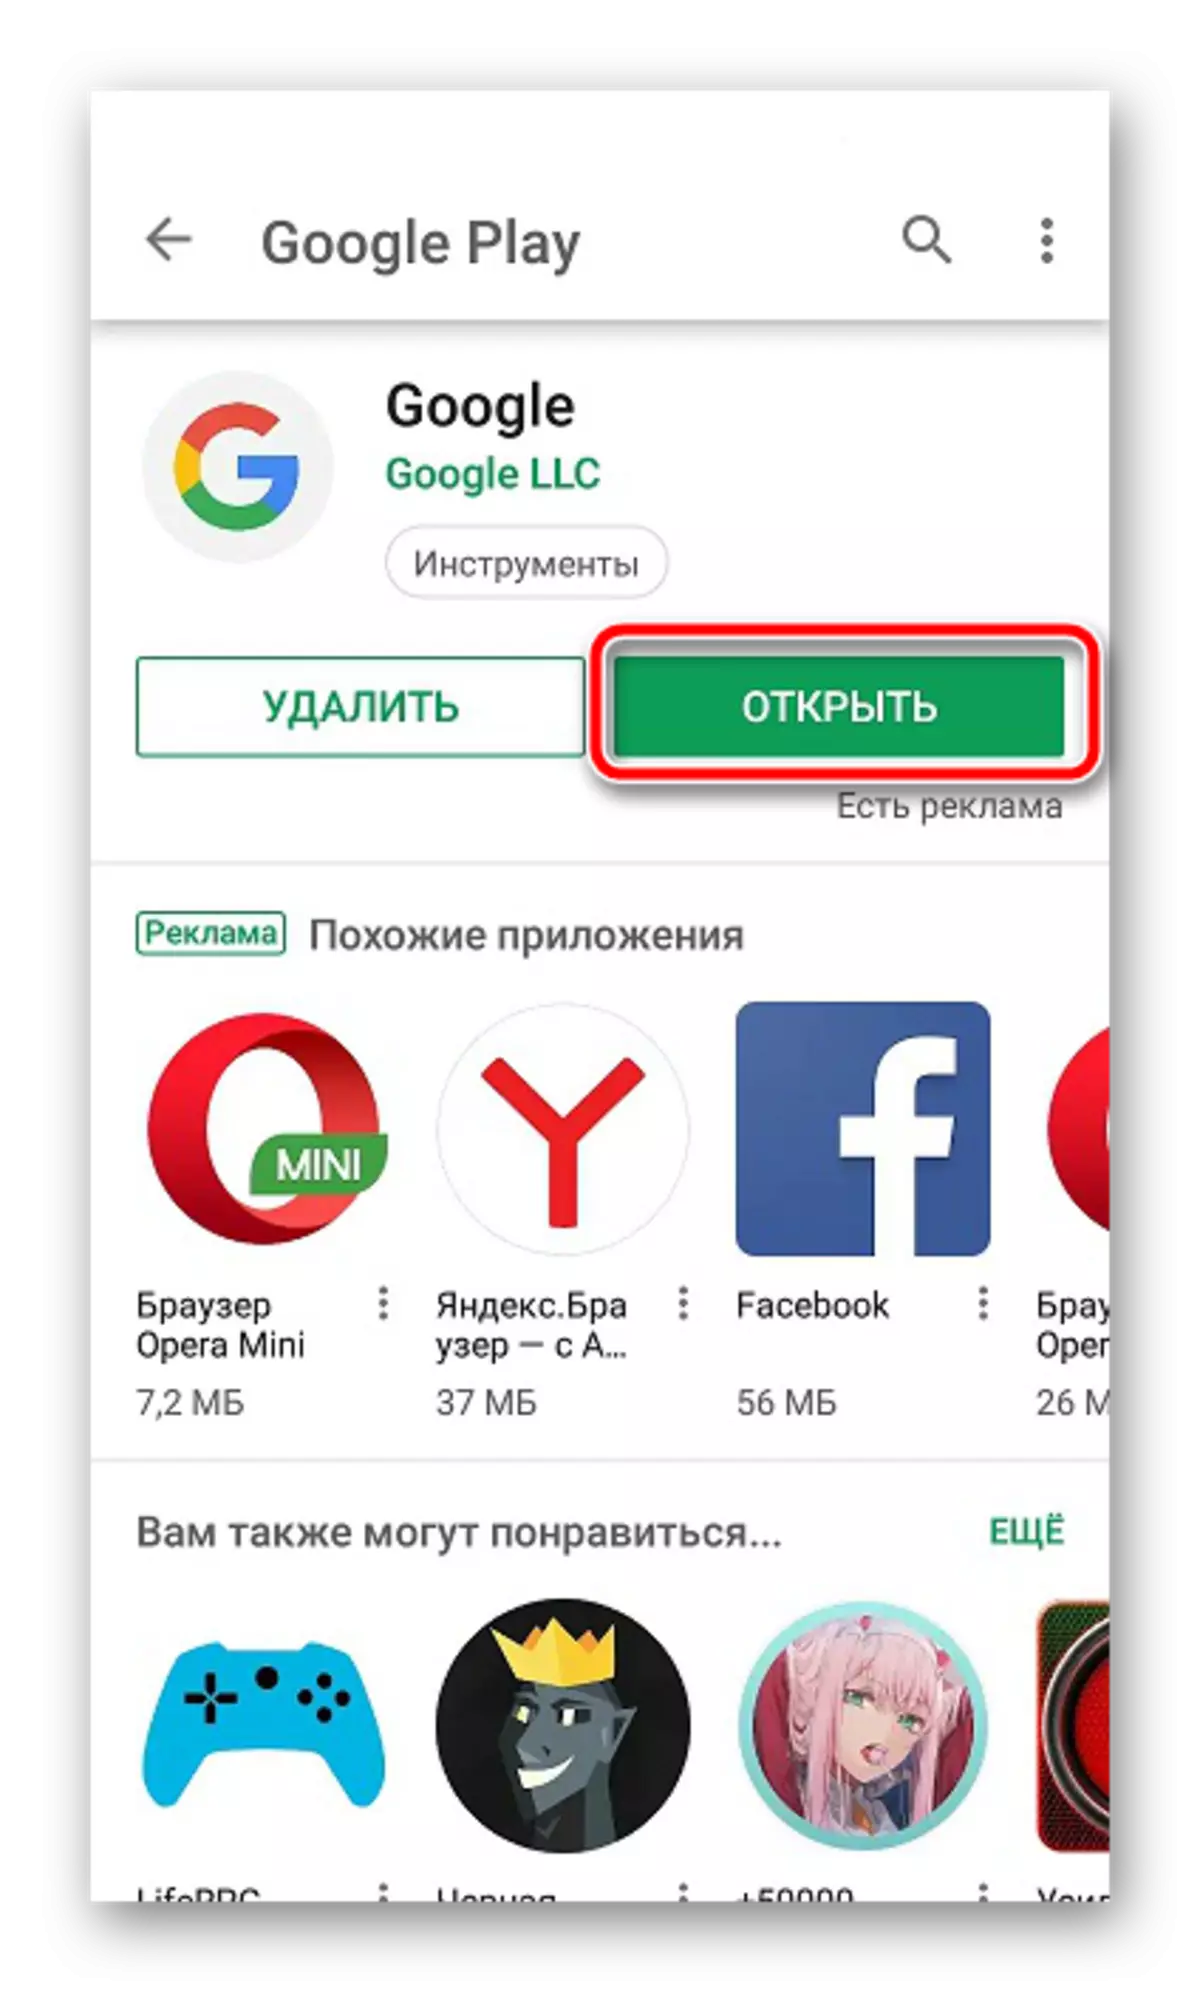 Abra o aplicativo do Google Mobile